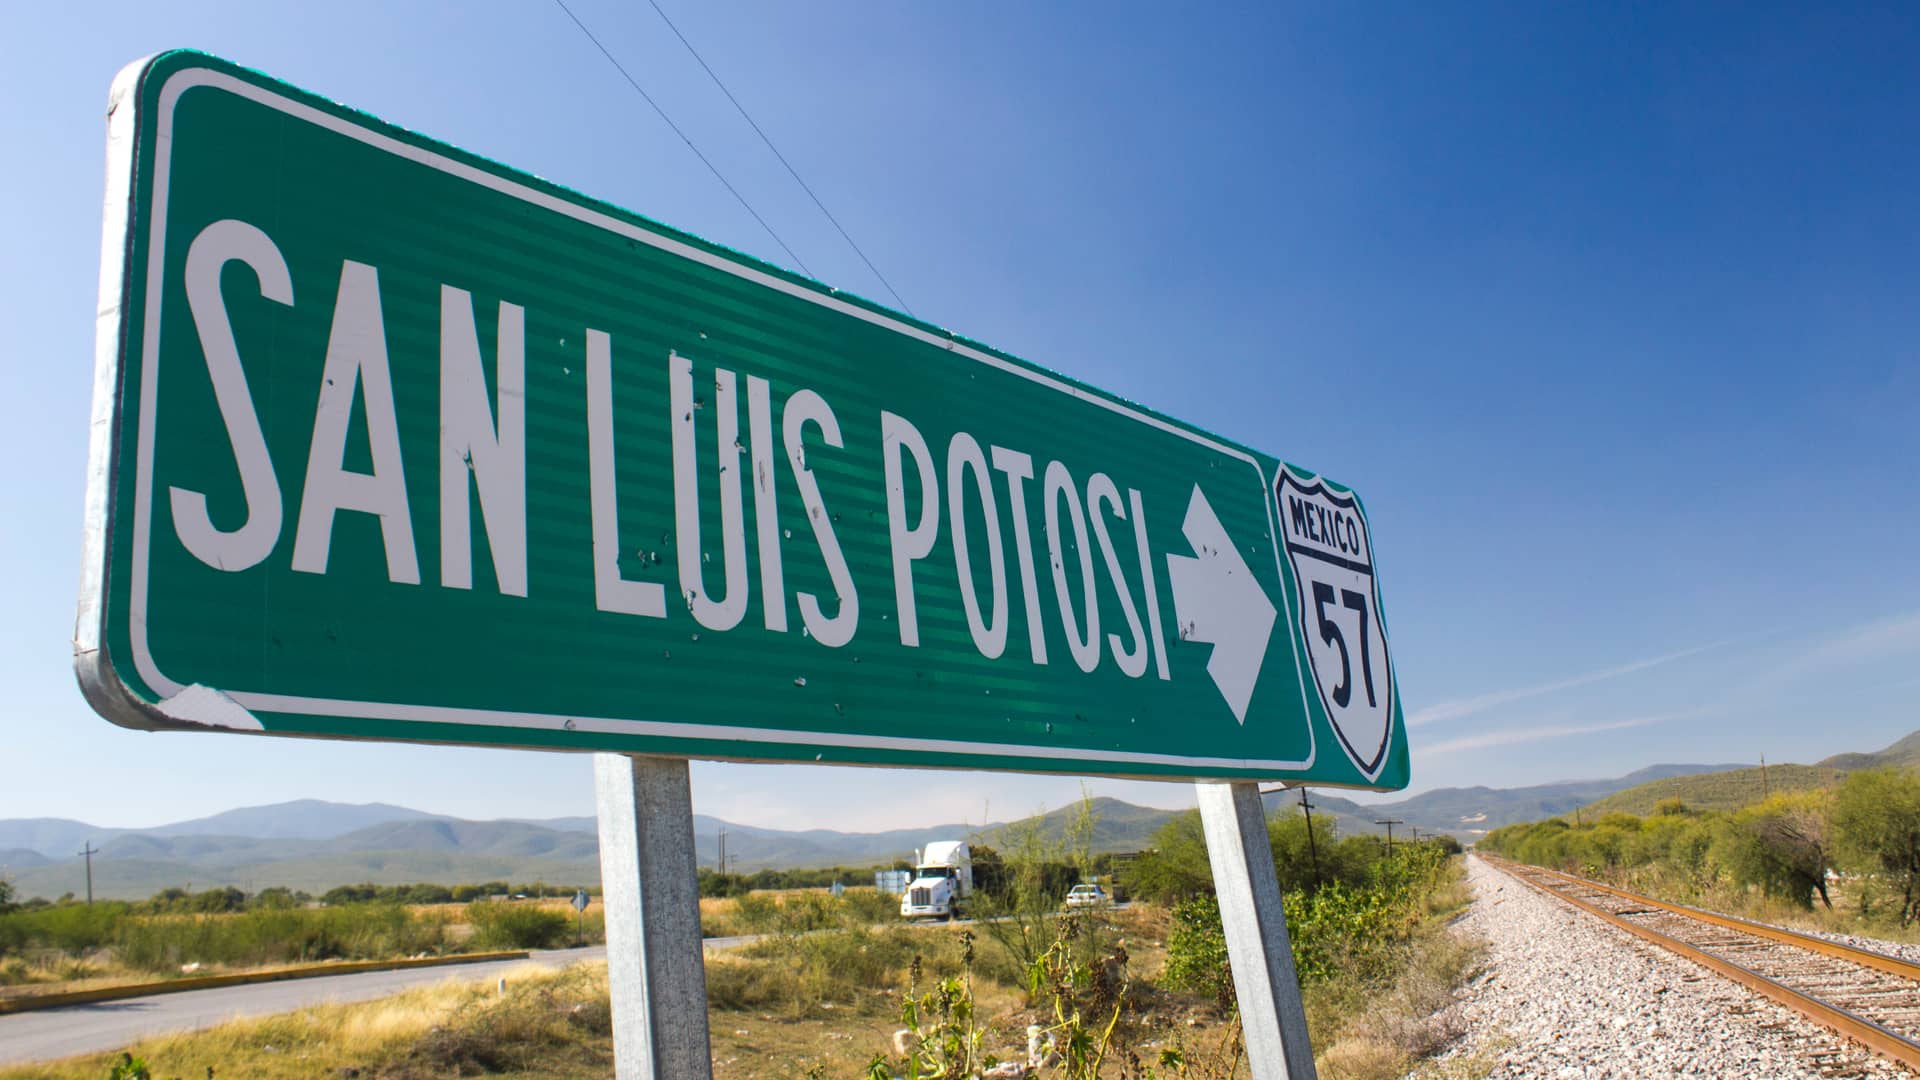 Internet San Luis Potosí: Conoce las compañías y cuál contratar